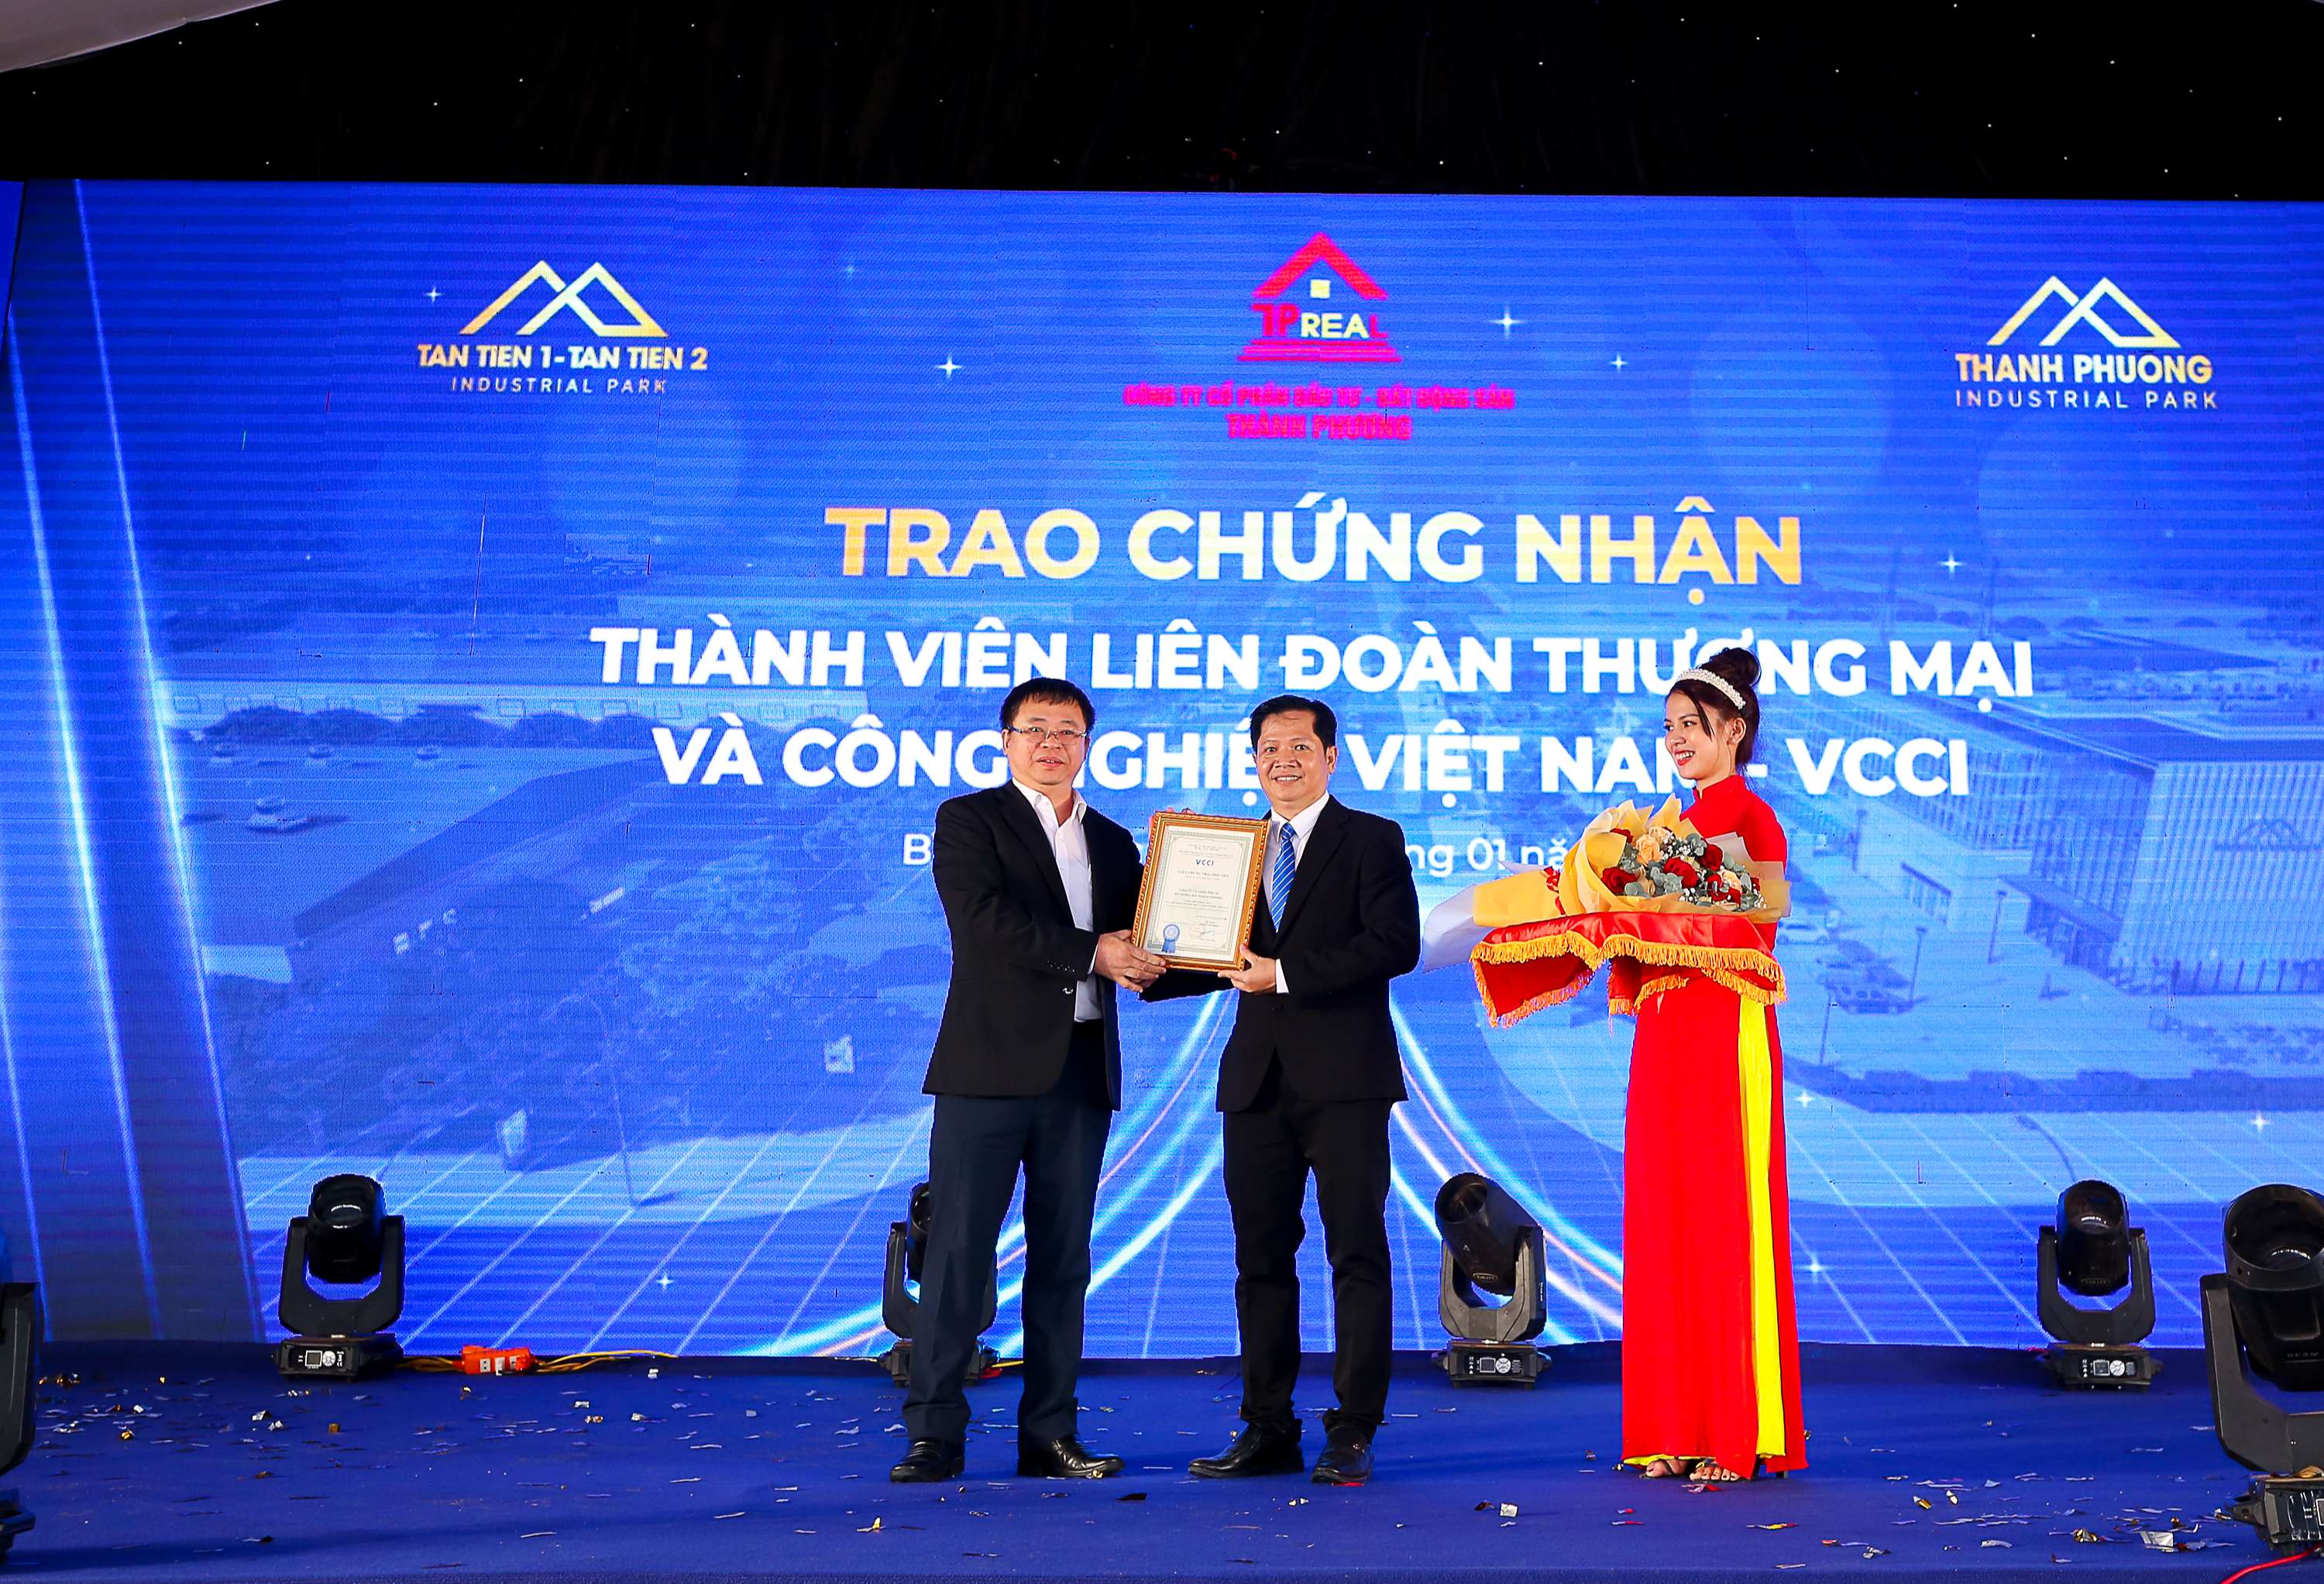 Trao chứng nhận thành viên Liên đoàn Thương mại và Công nghiệp Việt Nam (VCCI) cho Công ty cổ phần đầu tư - bất động sản Thành Phương